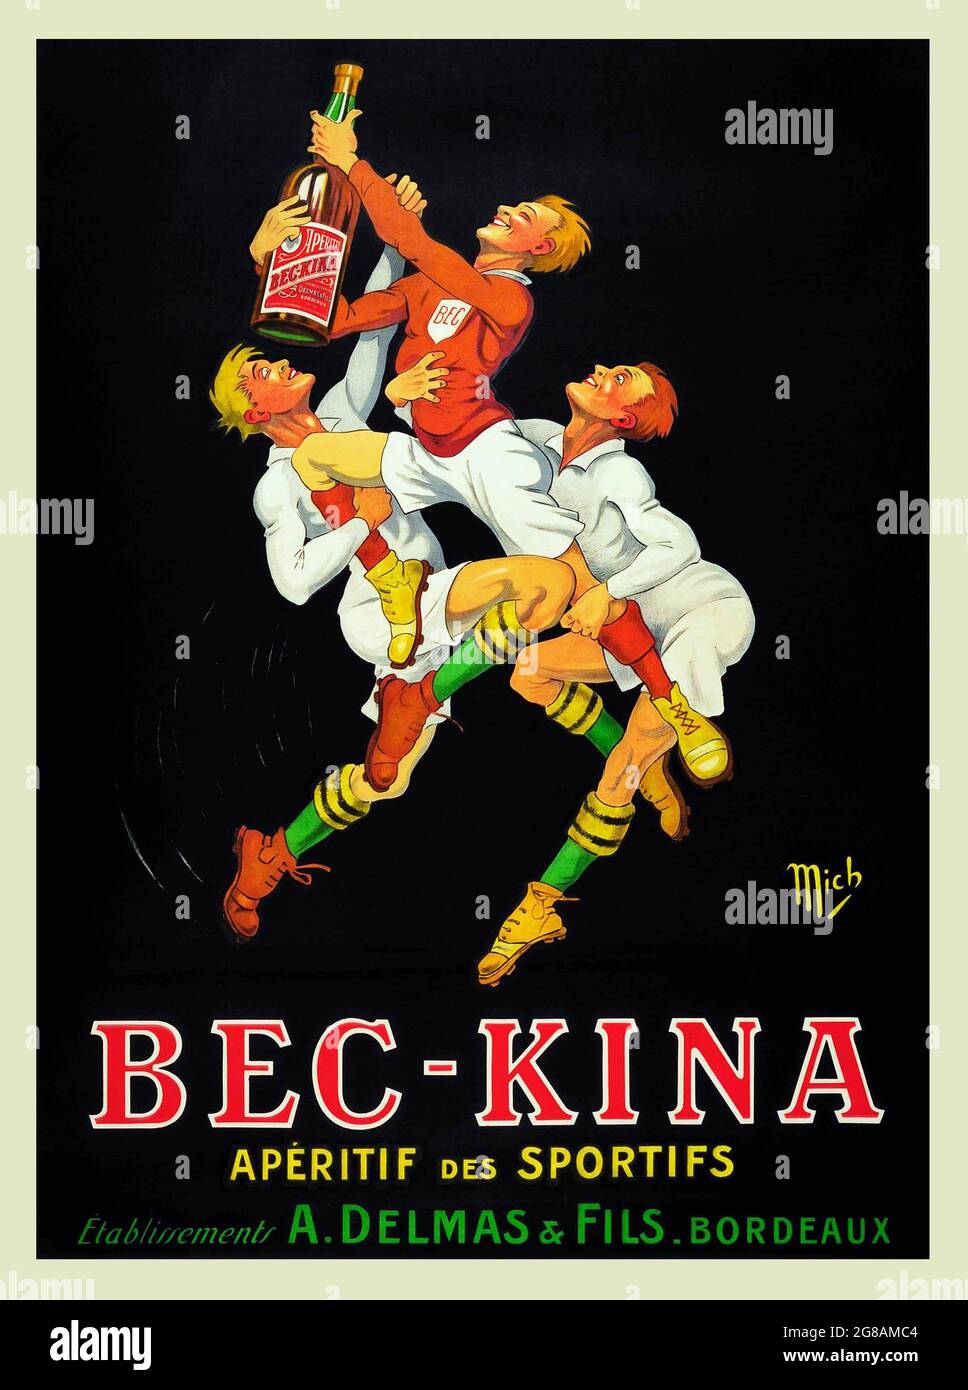 BEC-Kina Französischer Aperitif 1910. Werbung für Alkohol. Old Times Werbung feat. rugby-Spieler, die nach der Flasche greifen. Aperitif des Sportifs. Stockfoto